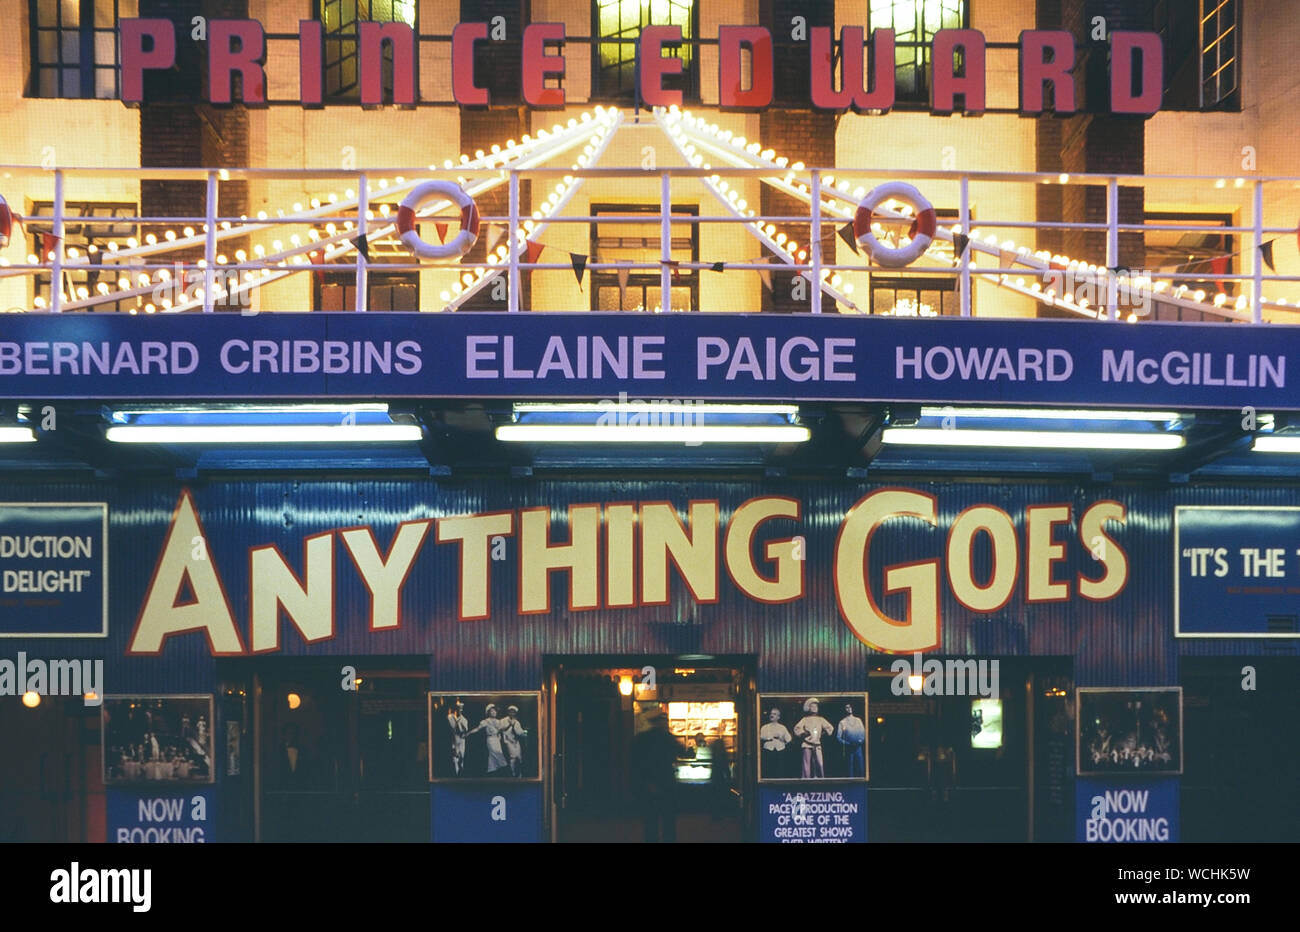 Teatro Prince Edward entrada para nada va musical, Soho, Londres, Reino Unido. Circa 1990 Foto de stock